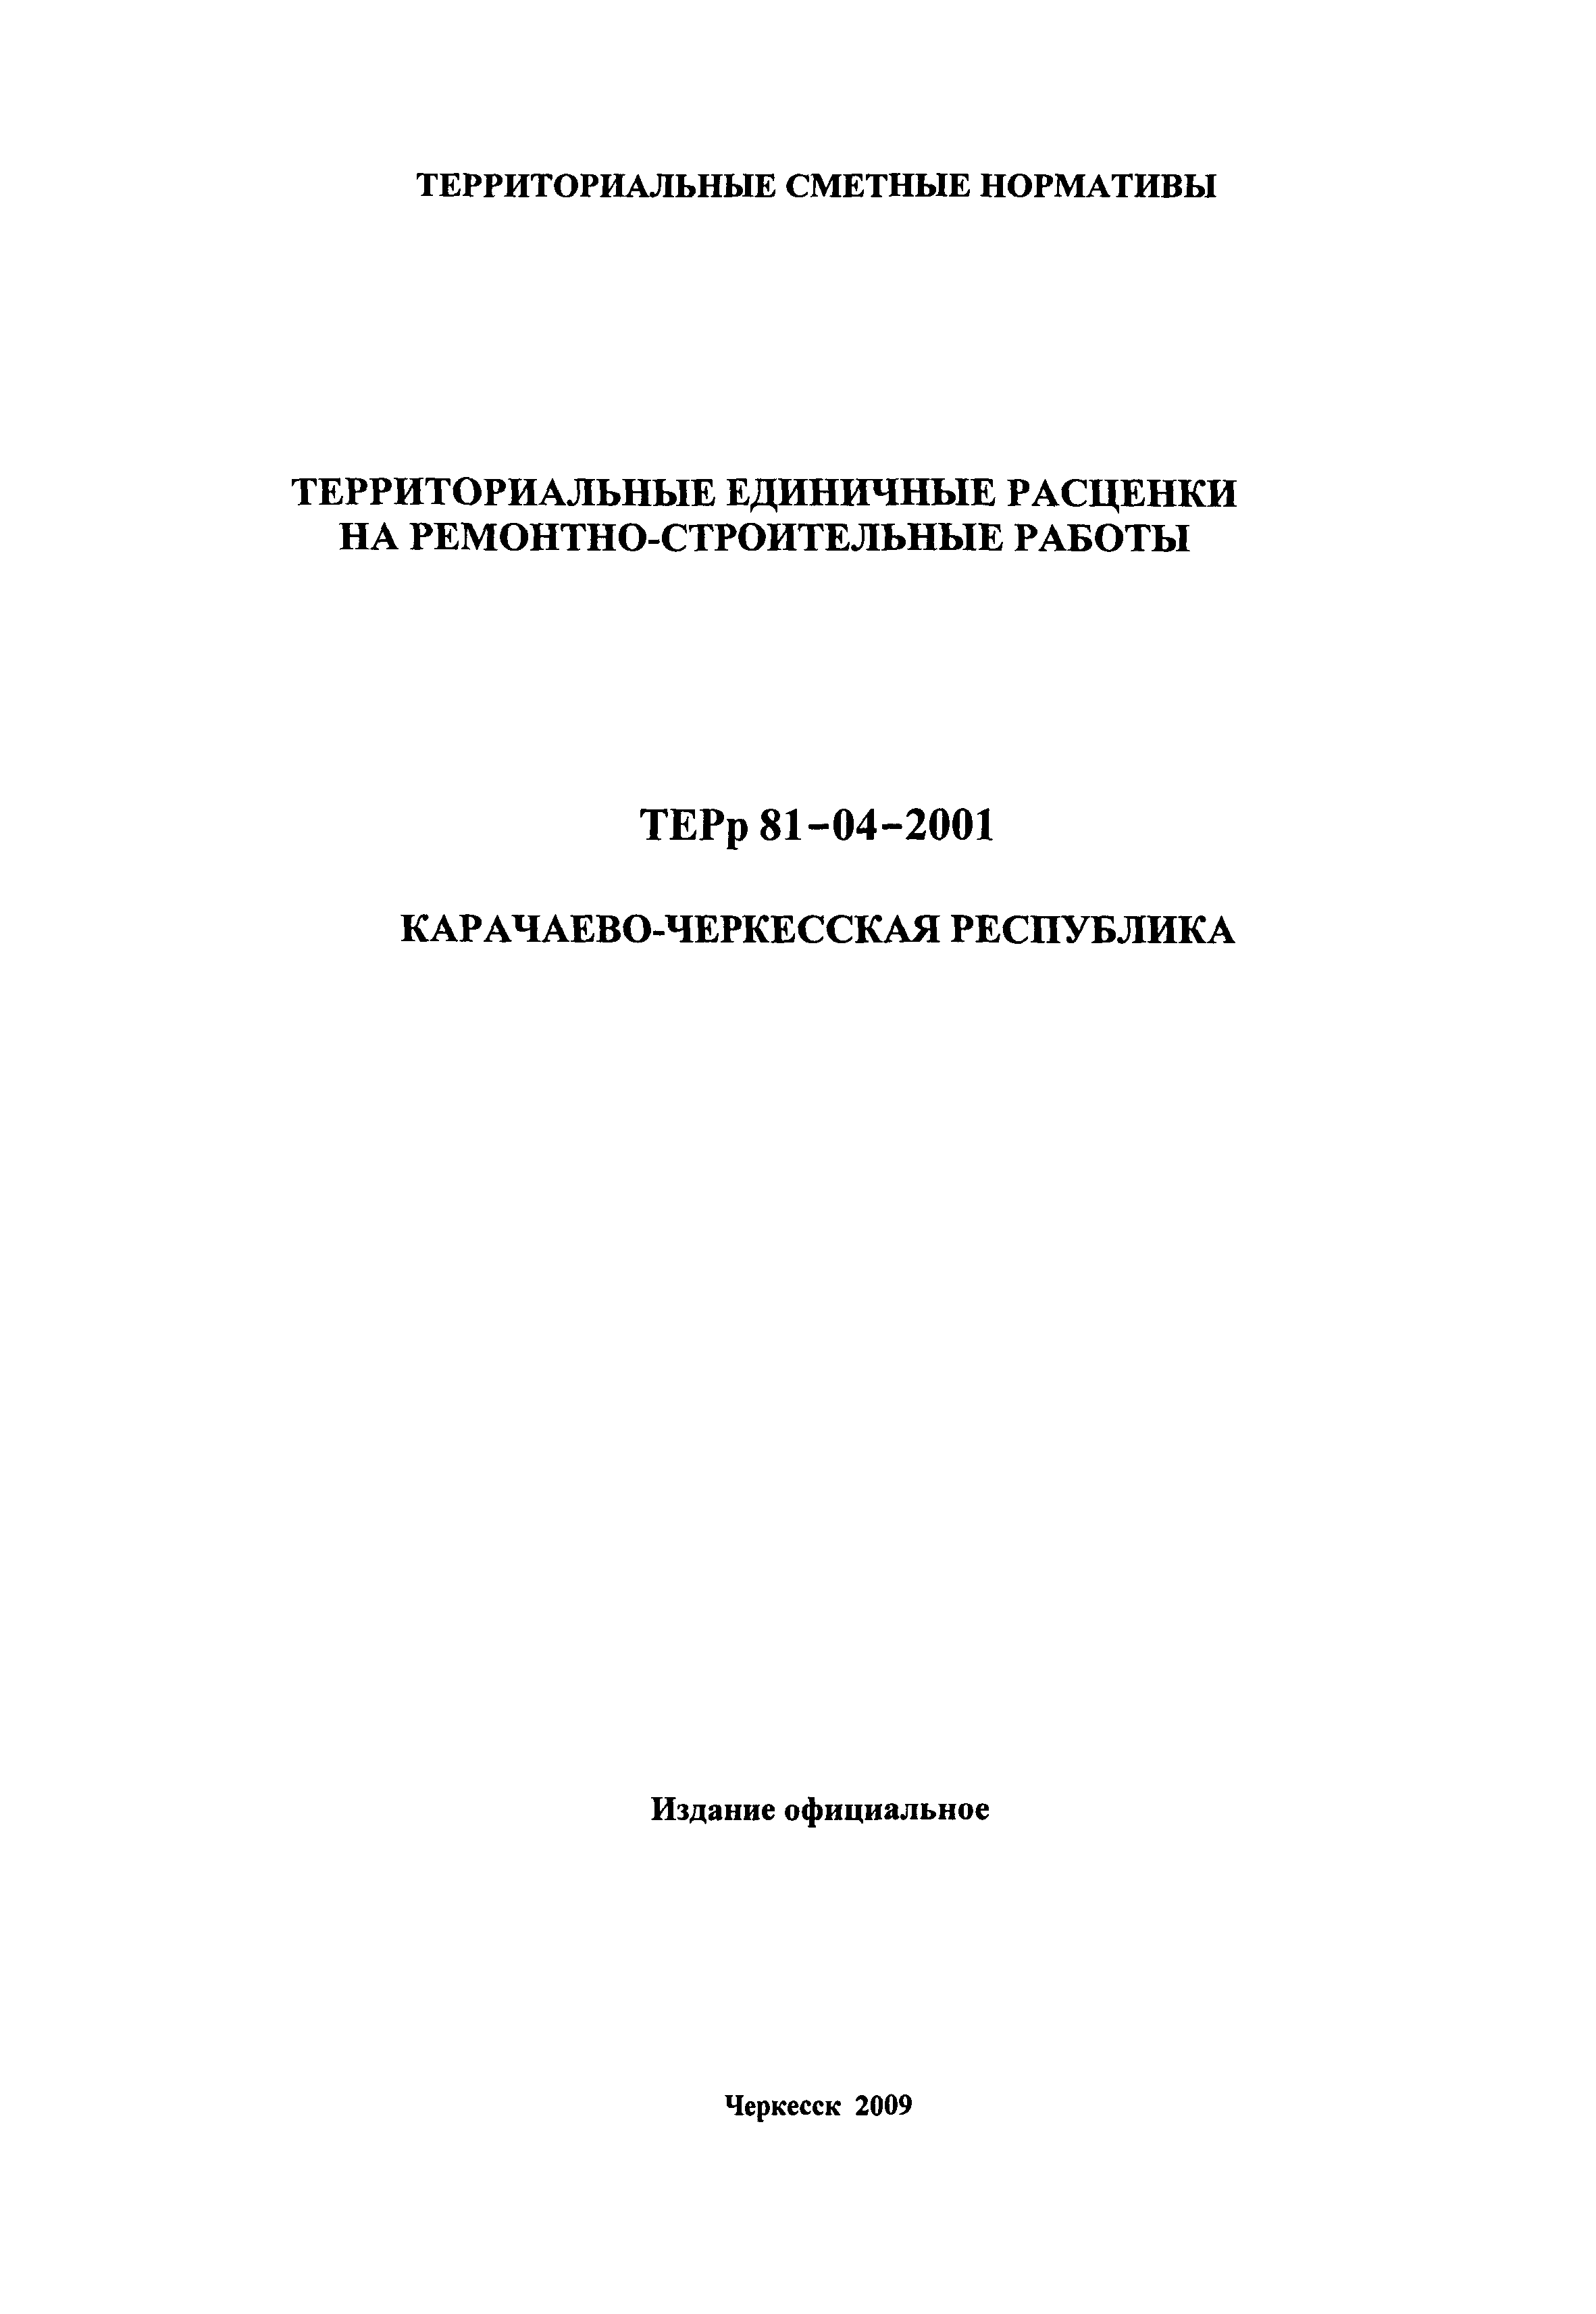 ТЕРр Карачаево-Черкесская Республика 2001-66